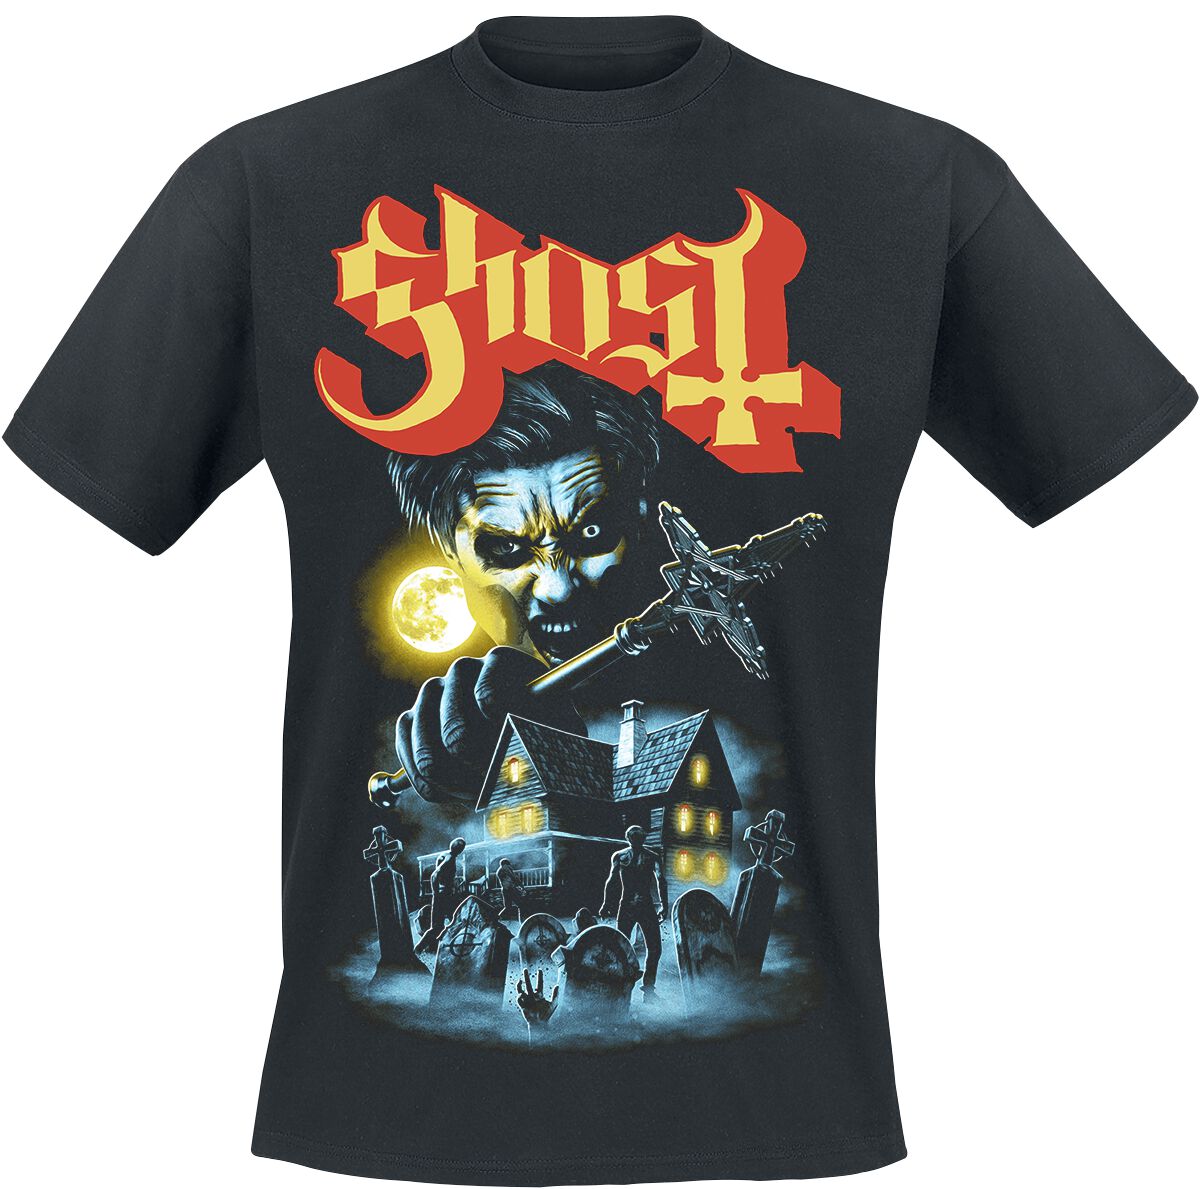 Ghost T-Shirt - By The Cemetery - S bis 4XL - für Männer - Größe L - schwarz  - Lizenziertes Merchandise!